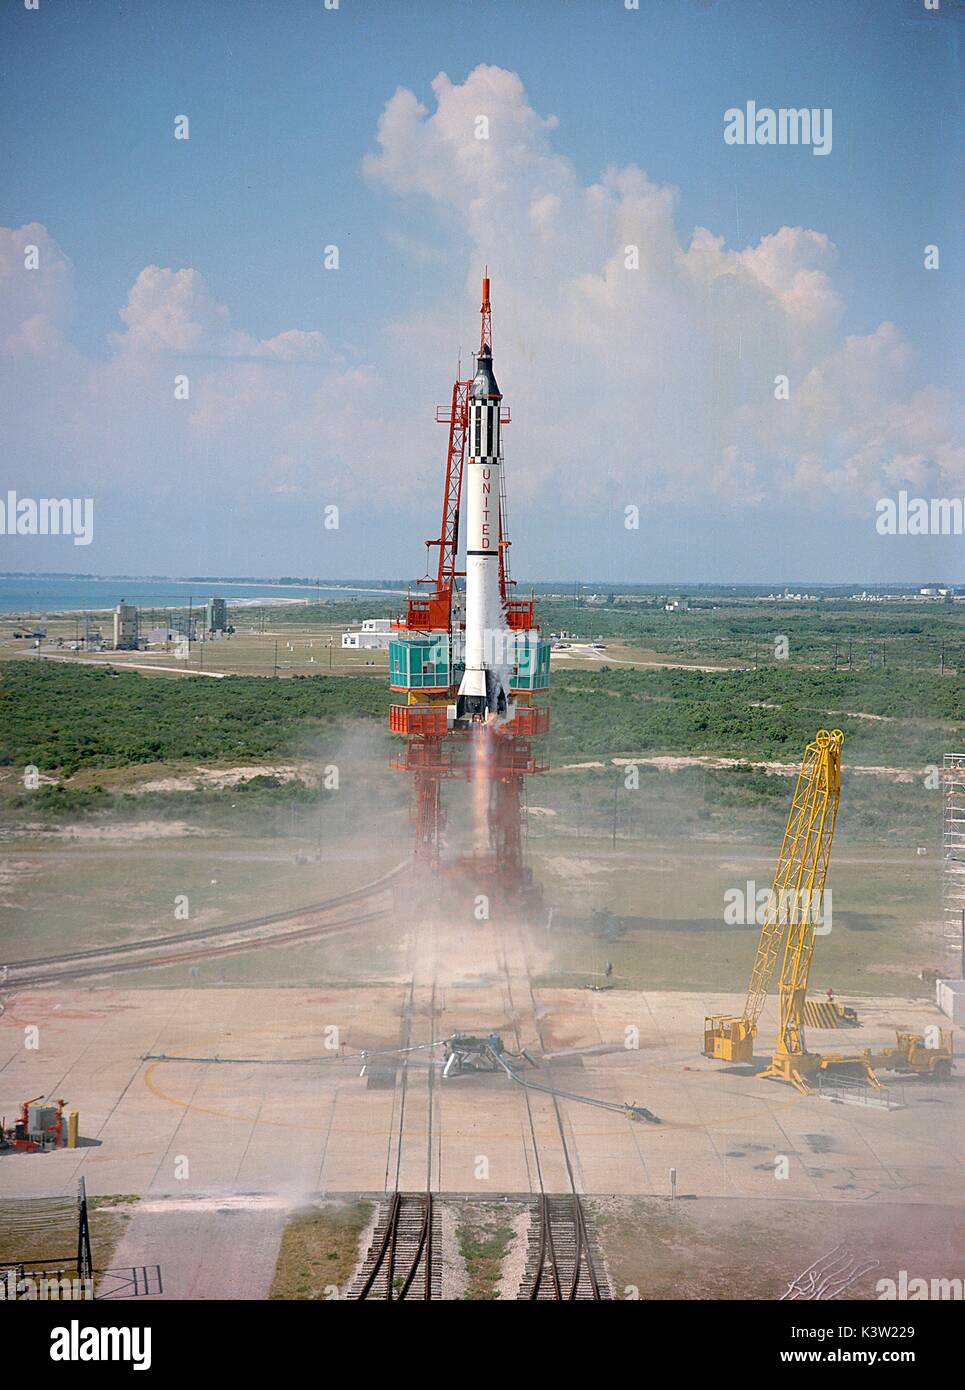 Die NASA Mercury-Redstone 3 Freiheit 7 Raketenstarts von der Cape Canaveral Air Force Station mit den ersten amerikanischen Astronauten Alan Shepard Mai 5, 1961 in Cape Canaveral, Florida. (Foto: NASA Foto über Planetpix) Stockfoto